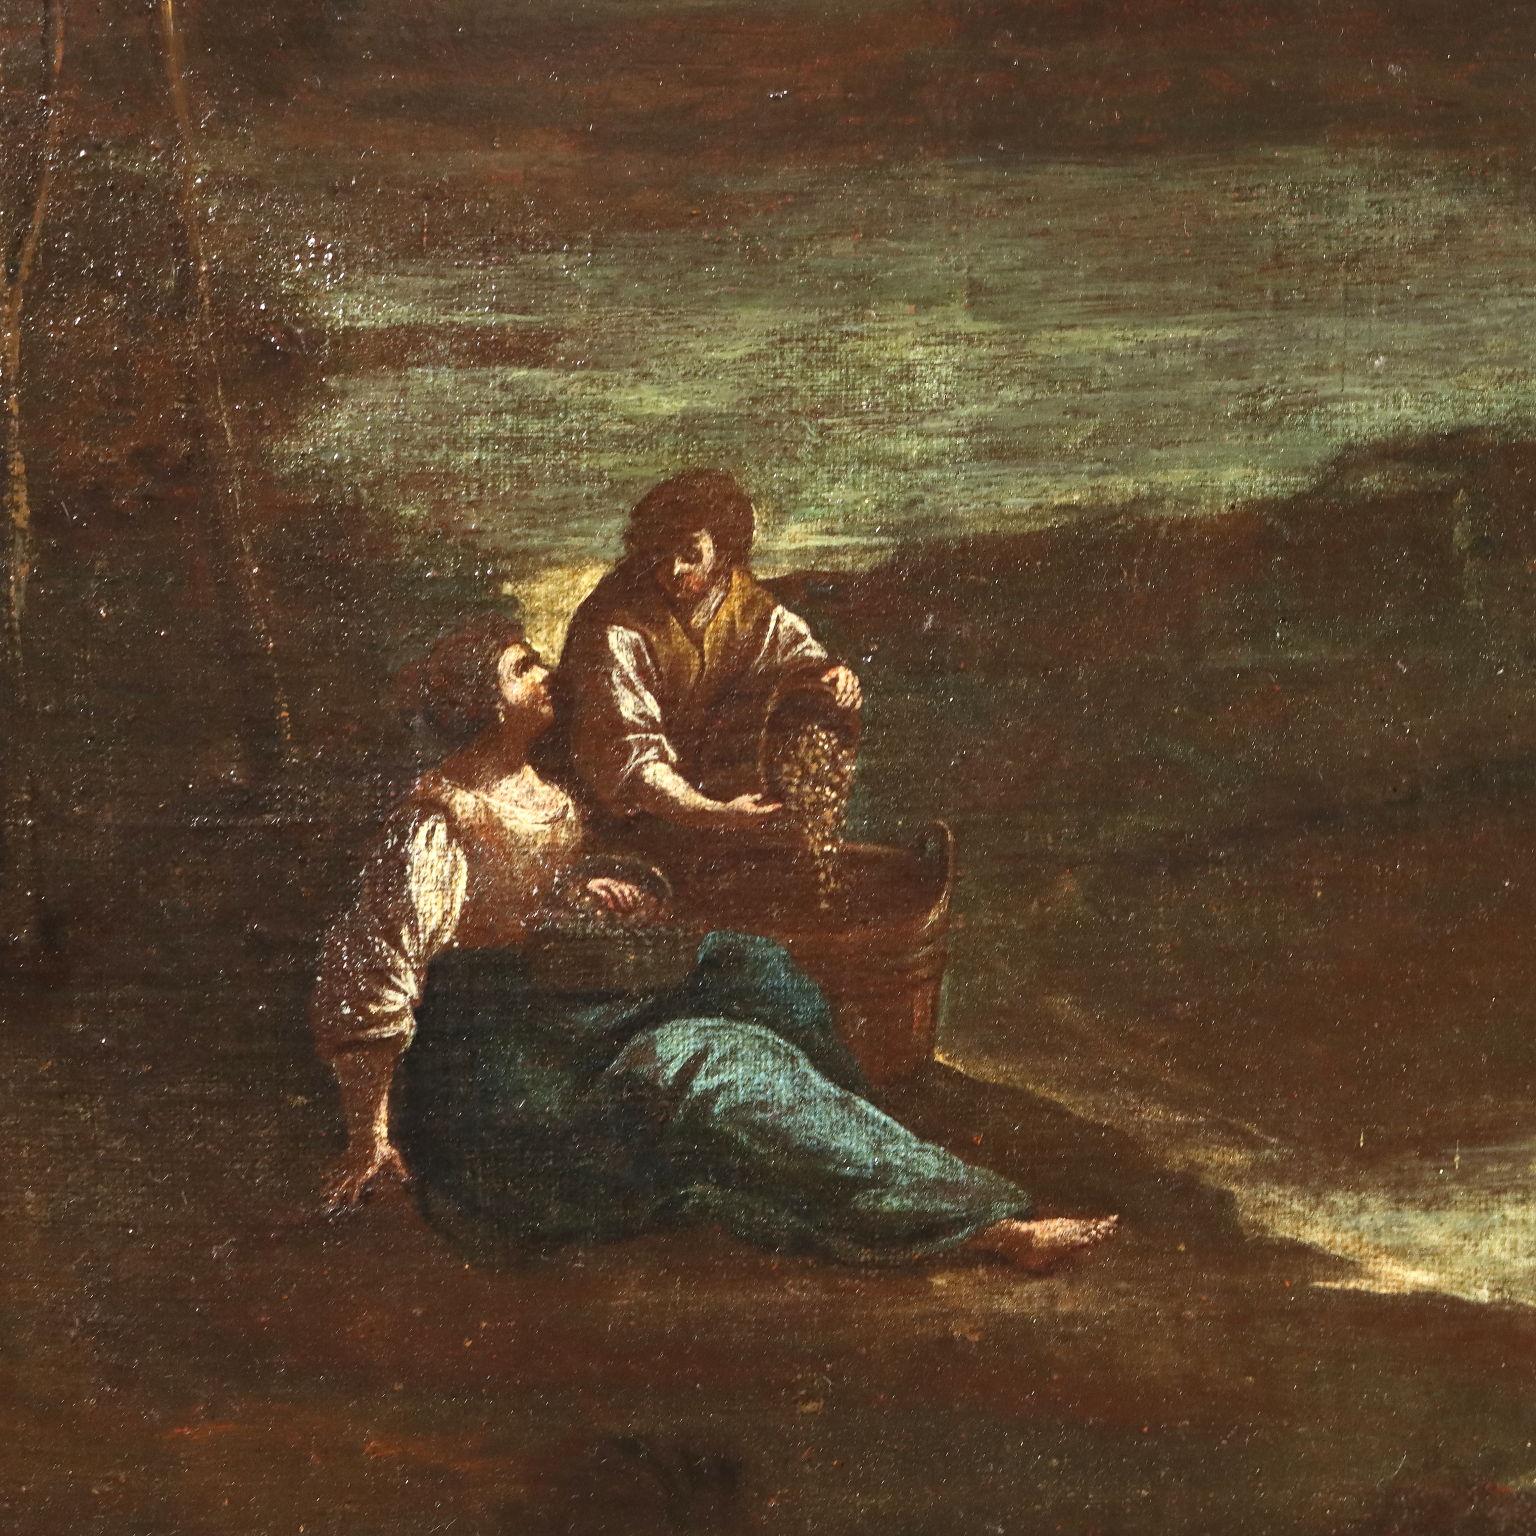 Öl auf Leinwand. Norditalienische Schule des 18. Jahrhunderts.
Die Landschaft am Ufer eines breiten Flusses zeigt in der Mitte mehrere Figuren von Bauern, die Früchte von einem Baum pflücken: ein Mädchen hält eine Leiter, während der Junge einen